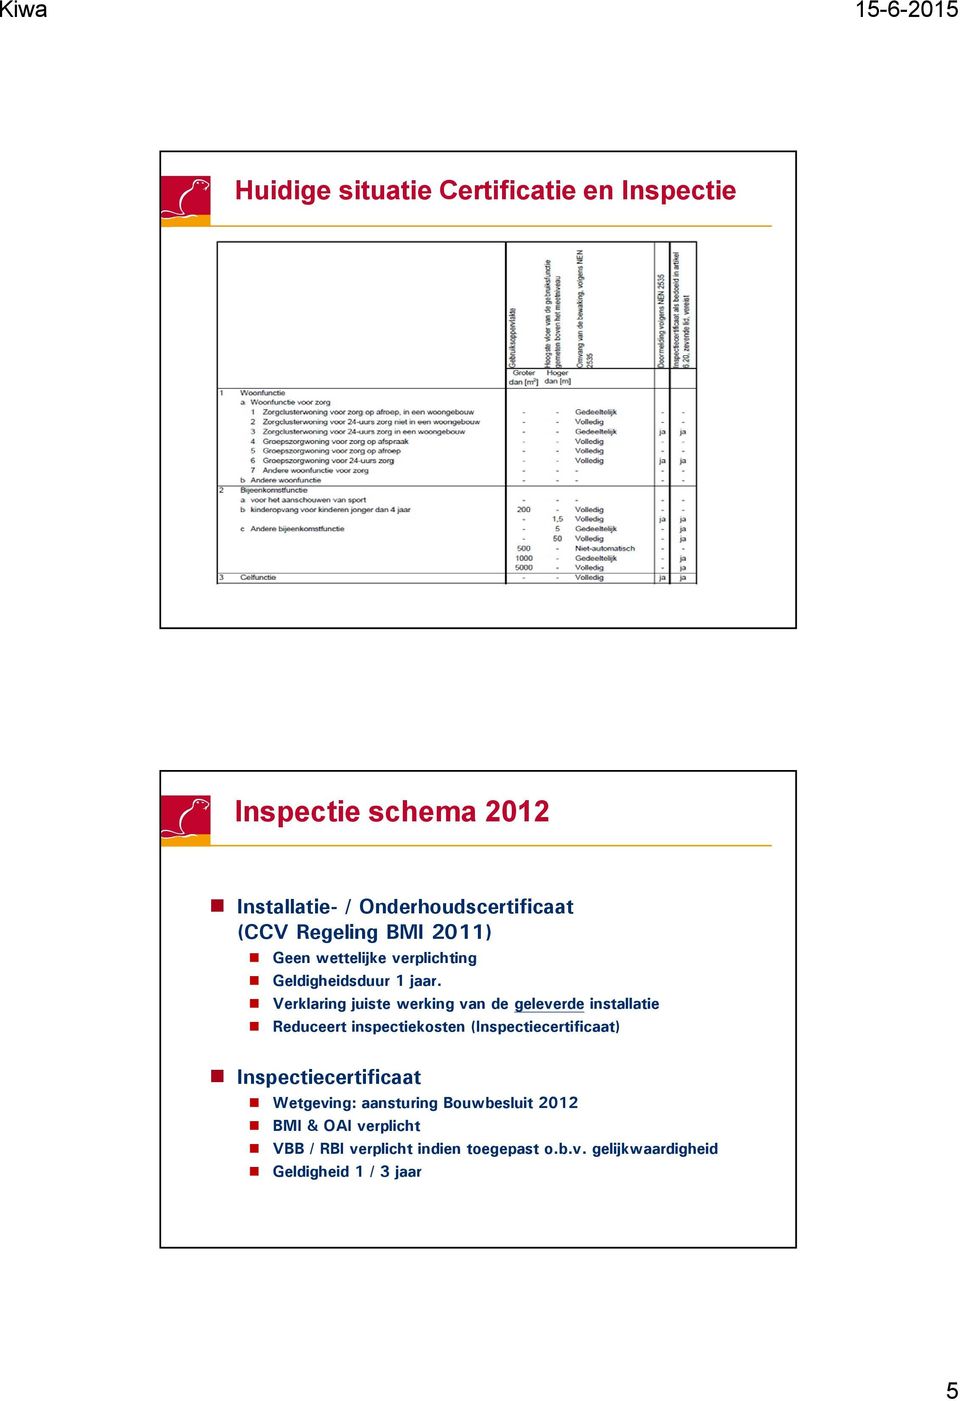 Verklaring juiste werking van de geleverde installatie Reduceert inspectiekosten (Inspectiecertificaat)